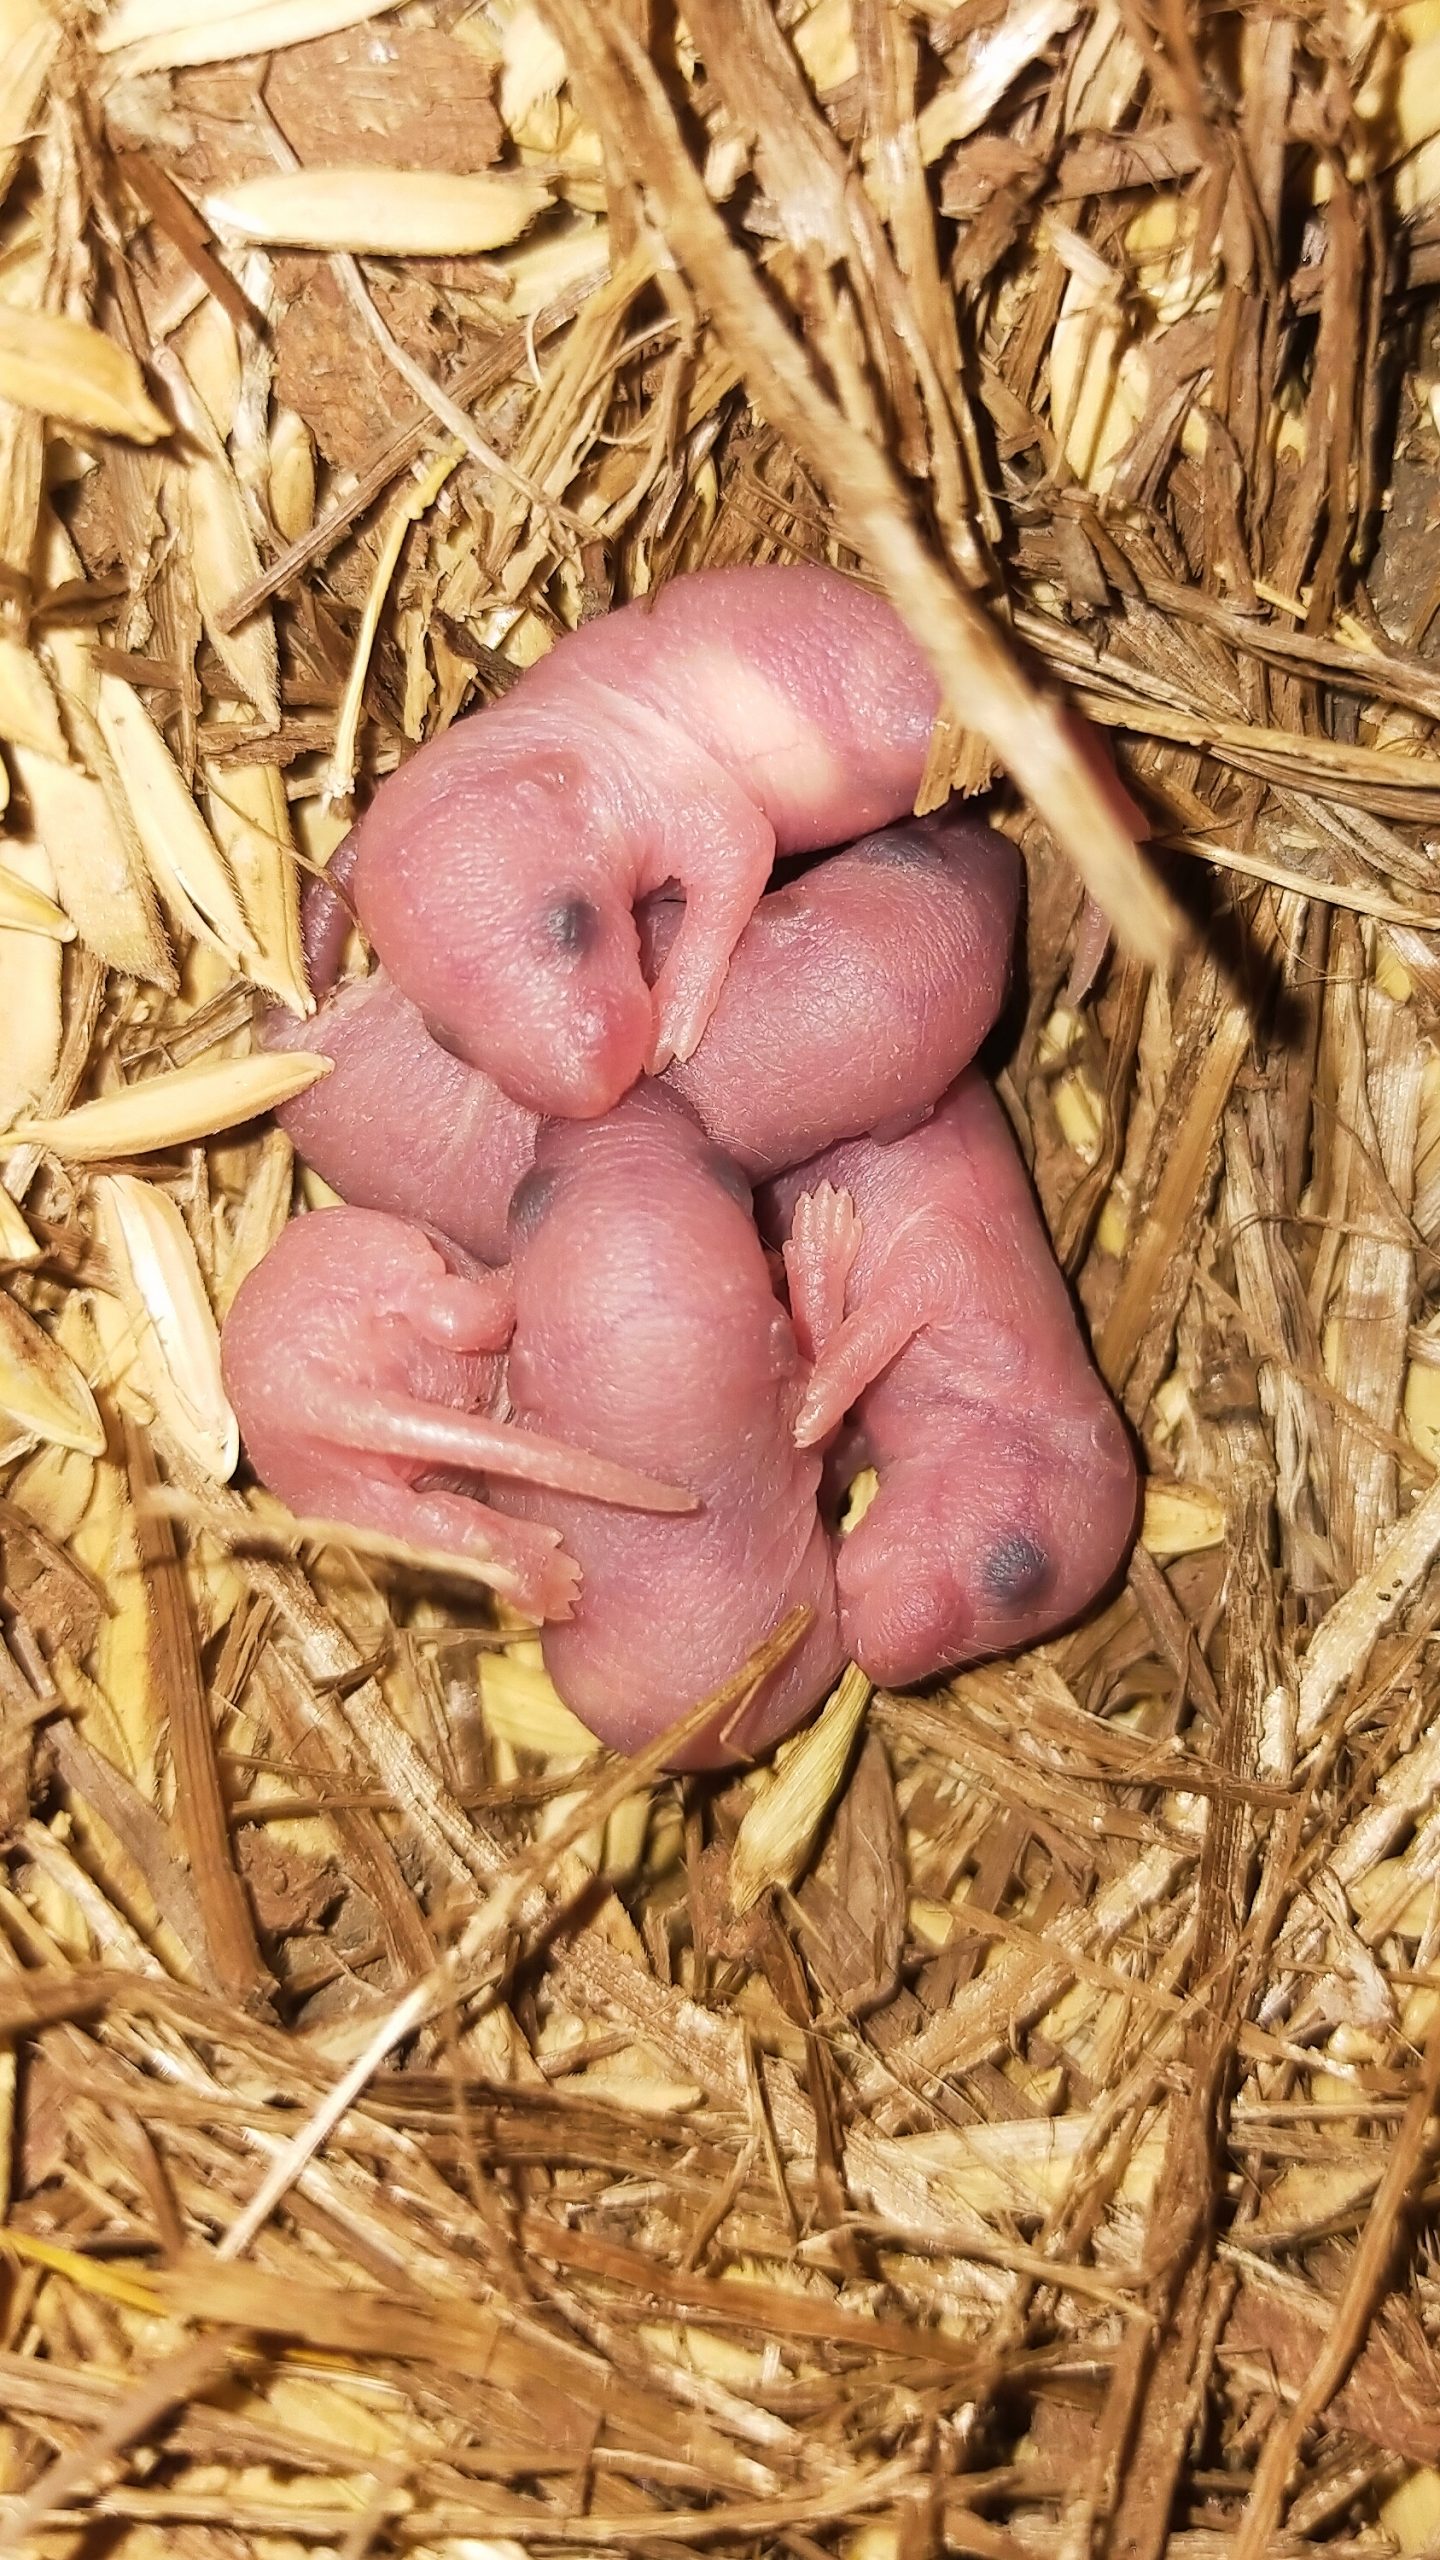 A mouse pups